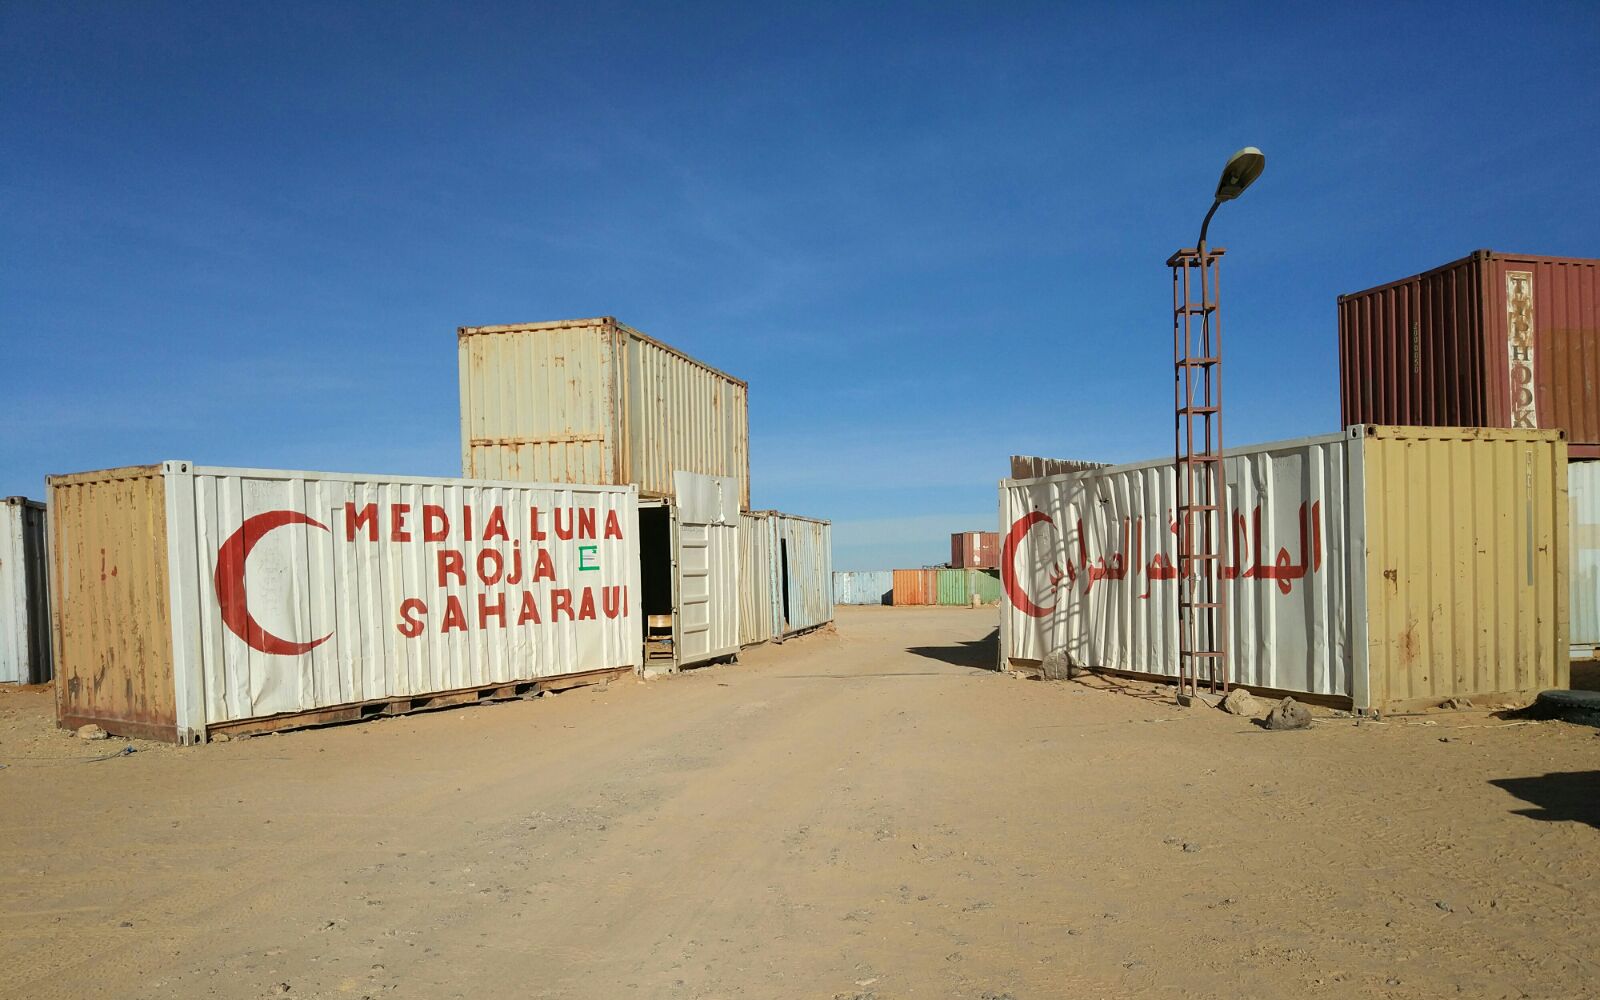 a_fedesaex_viaje de identificacion_sahara-extremadura-campamentos-refugiados-tindouf-media-luna-roja-saharaui